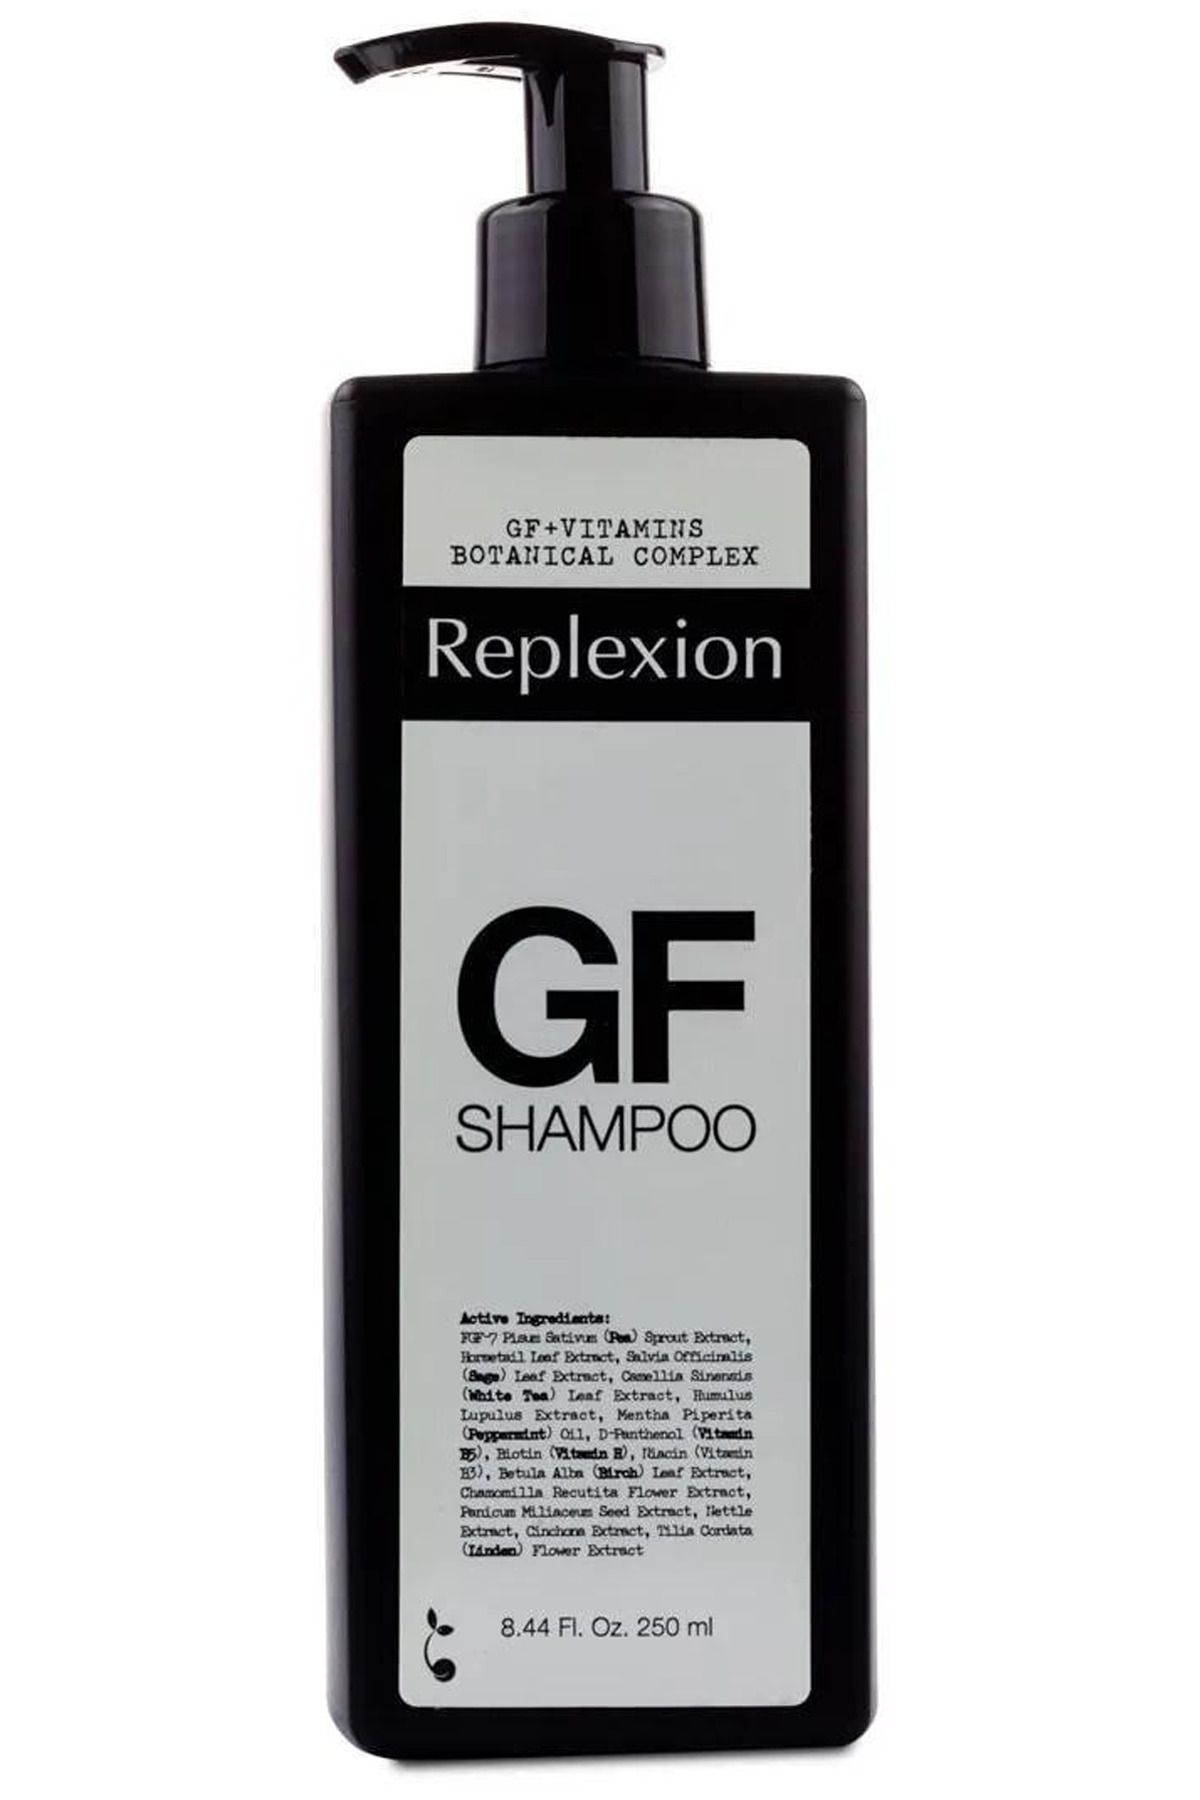 Replexion GF Shampoo Saç Dökülmesine Karşı Şampuan Yıpranmış Ve Hasar Görmüş Saçlara Bitkisel Koruma Sağlar